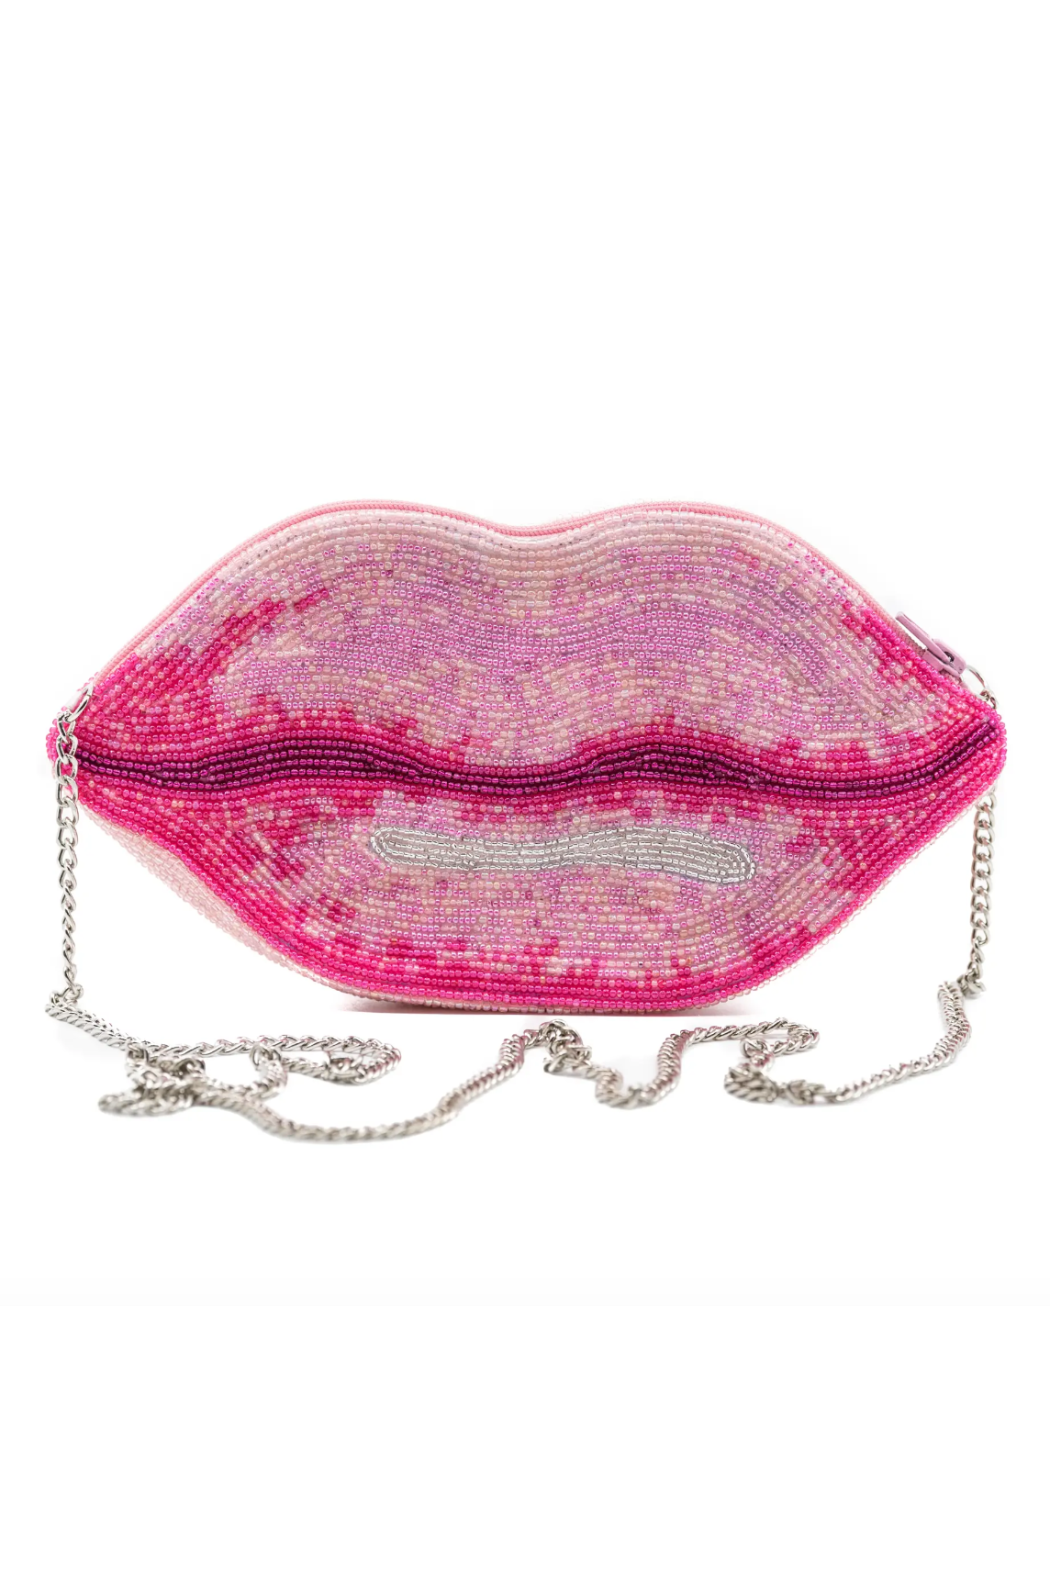 Lip Balm in Glitter Purse Pink